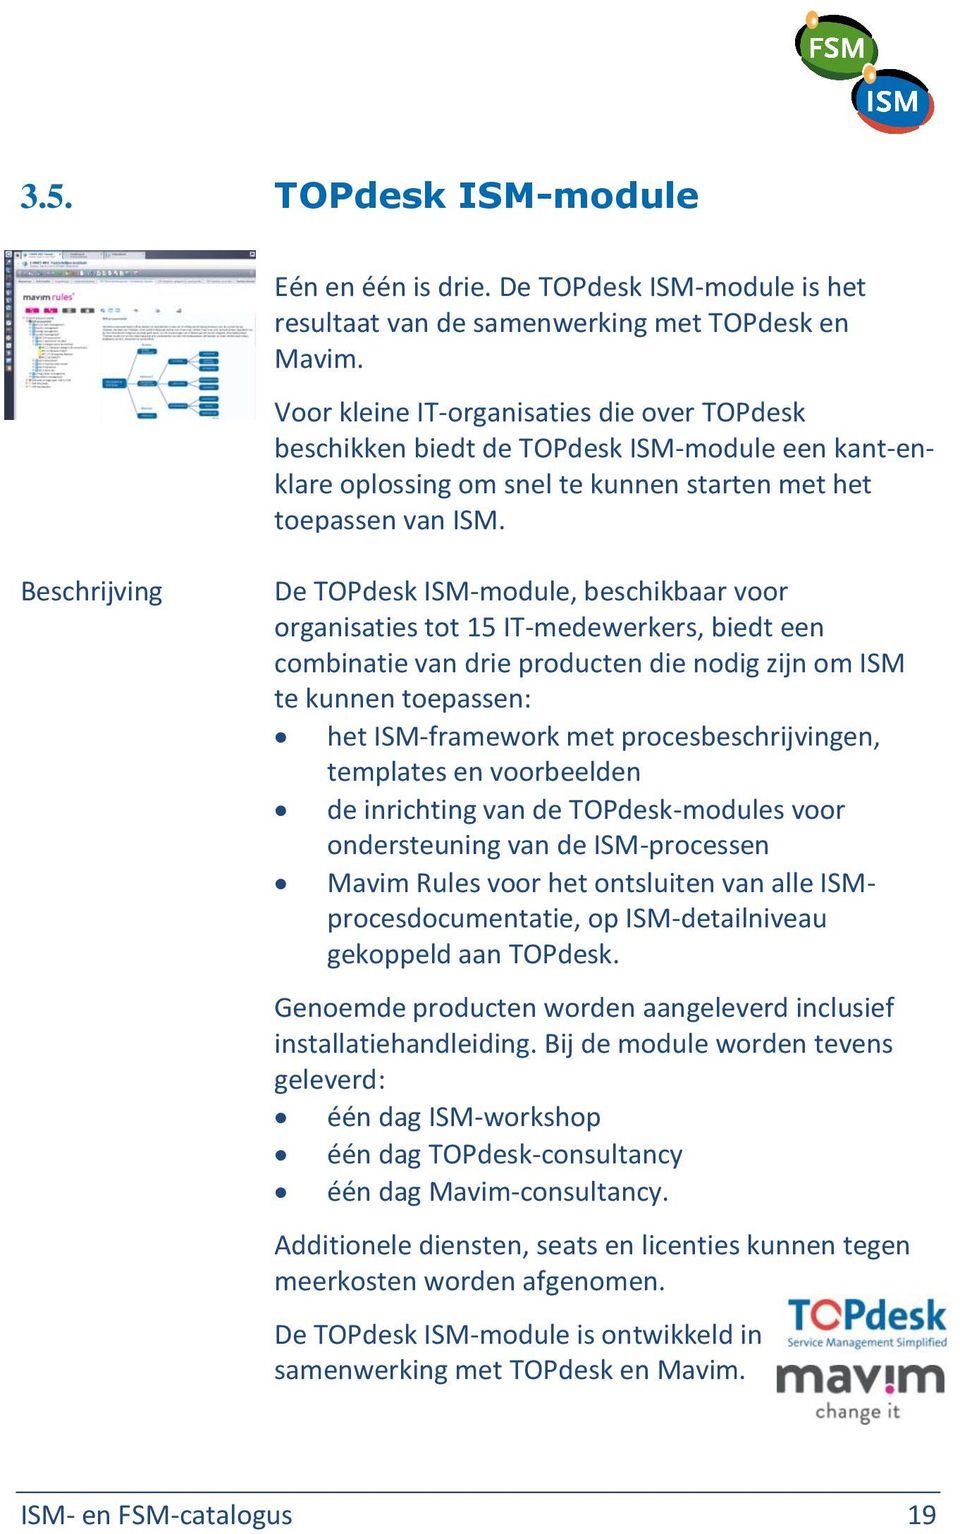 De TOPdesk ISM-module, beschikbaar voor organisaties tot 15 IT-medewerkers, biedt een combinatie van drie producten die nodig zijn om ISM te kunnen toepassen: het ISM-framework met